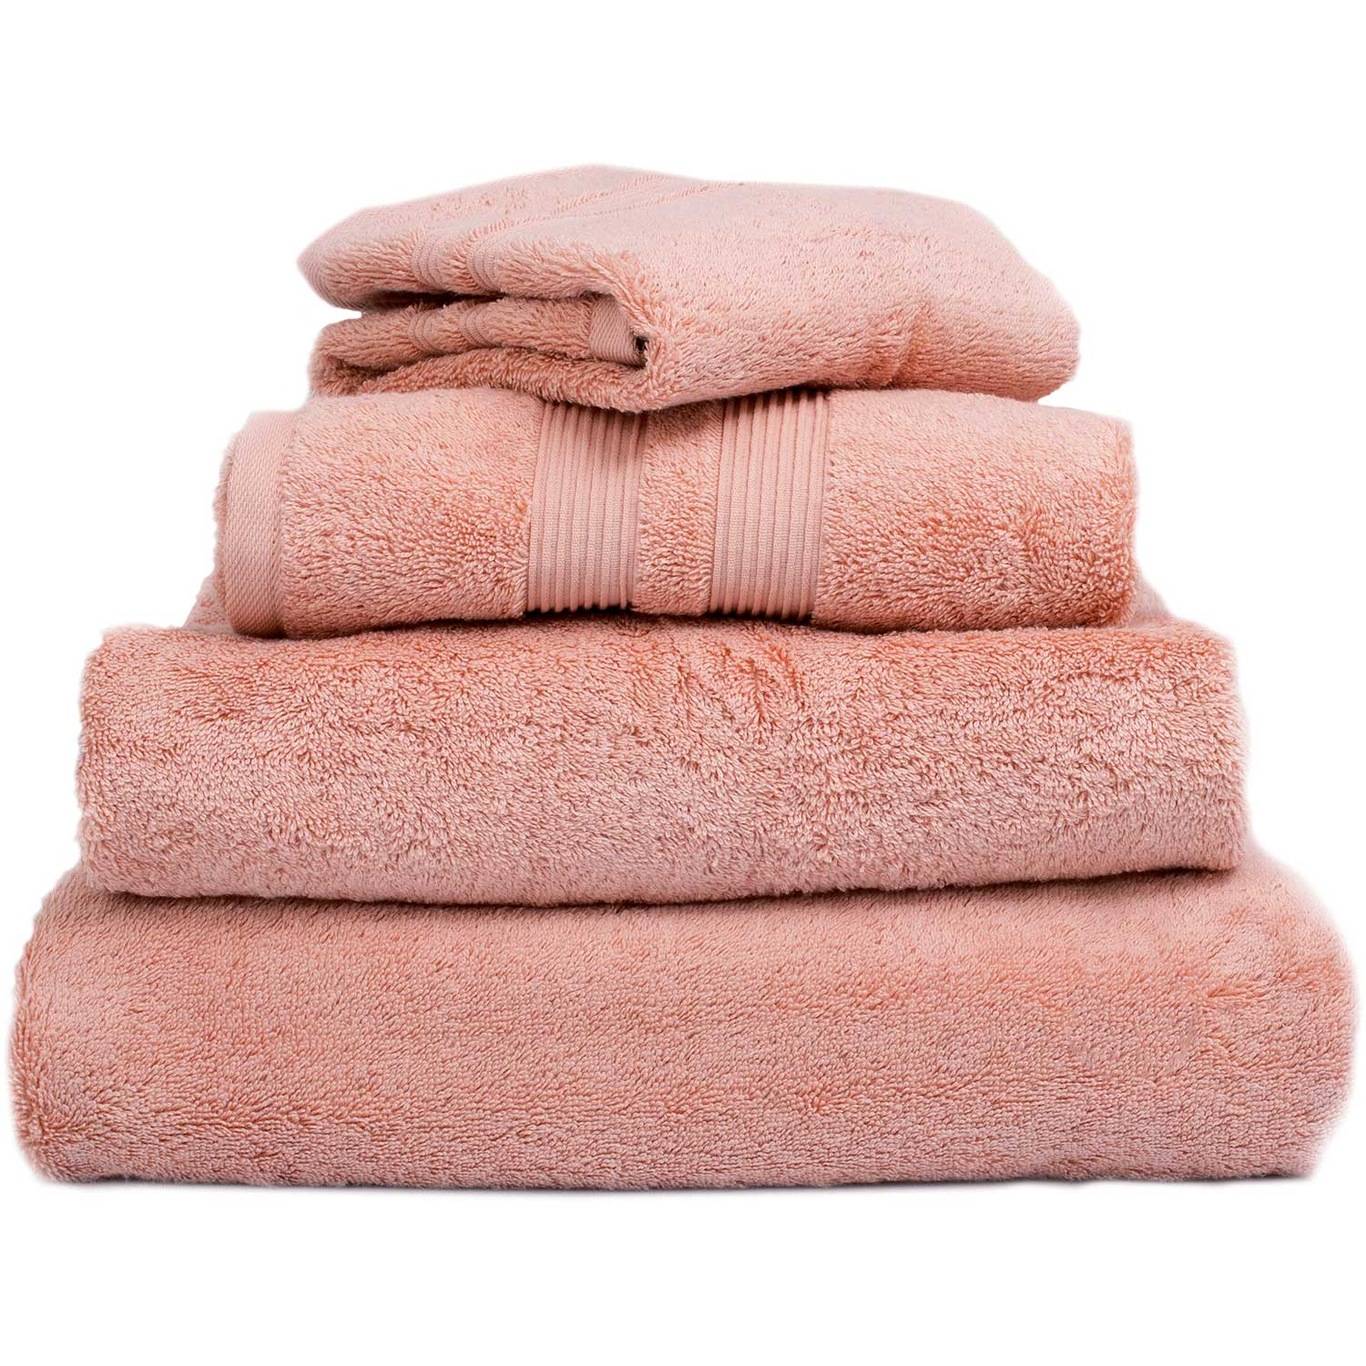 Fontana EKO Towel Pink, 30x50 cm